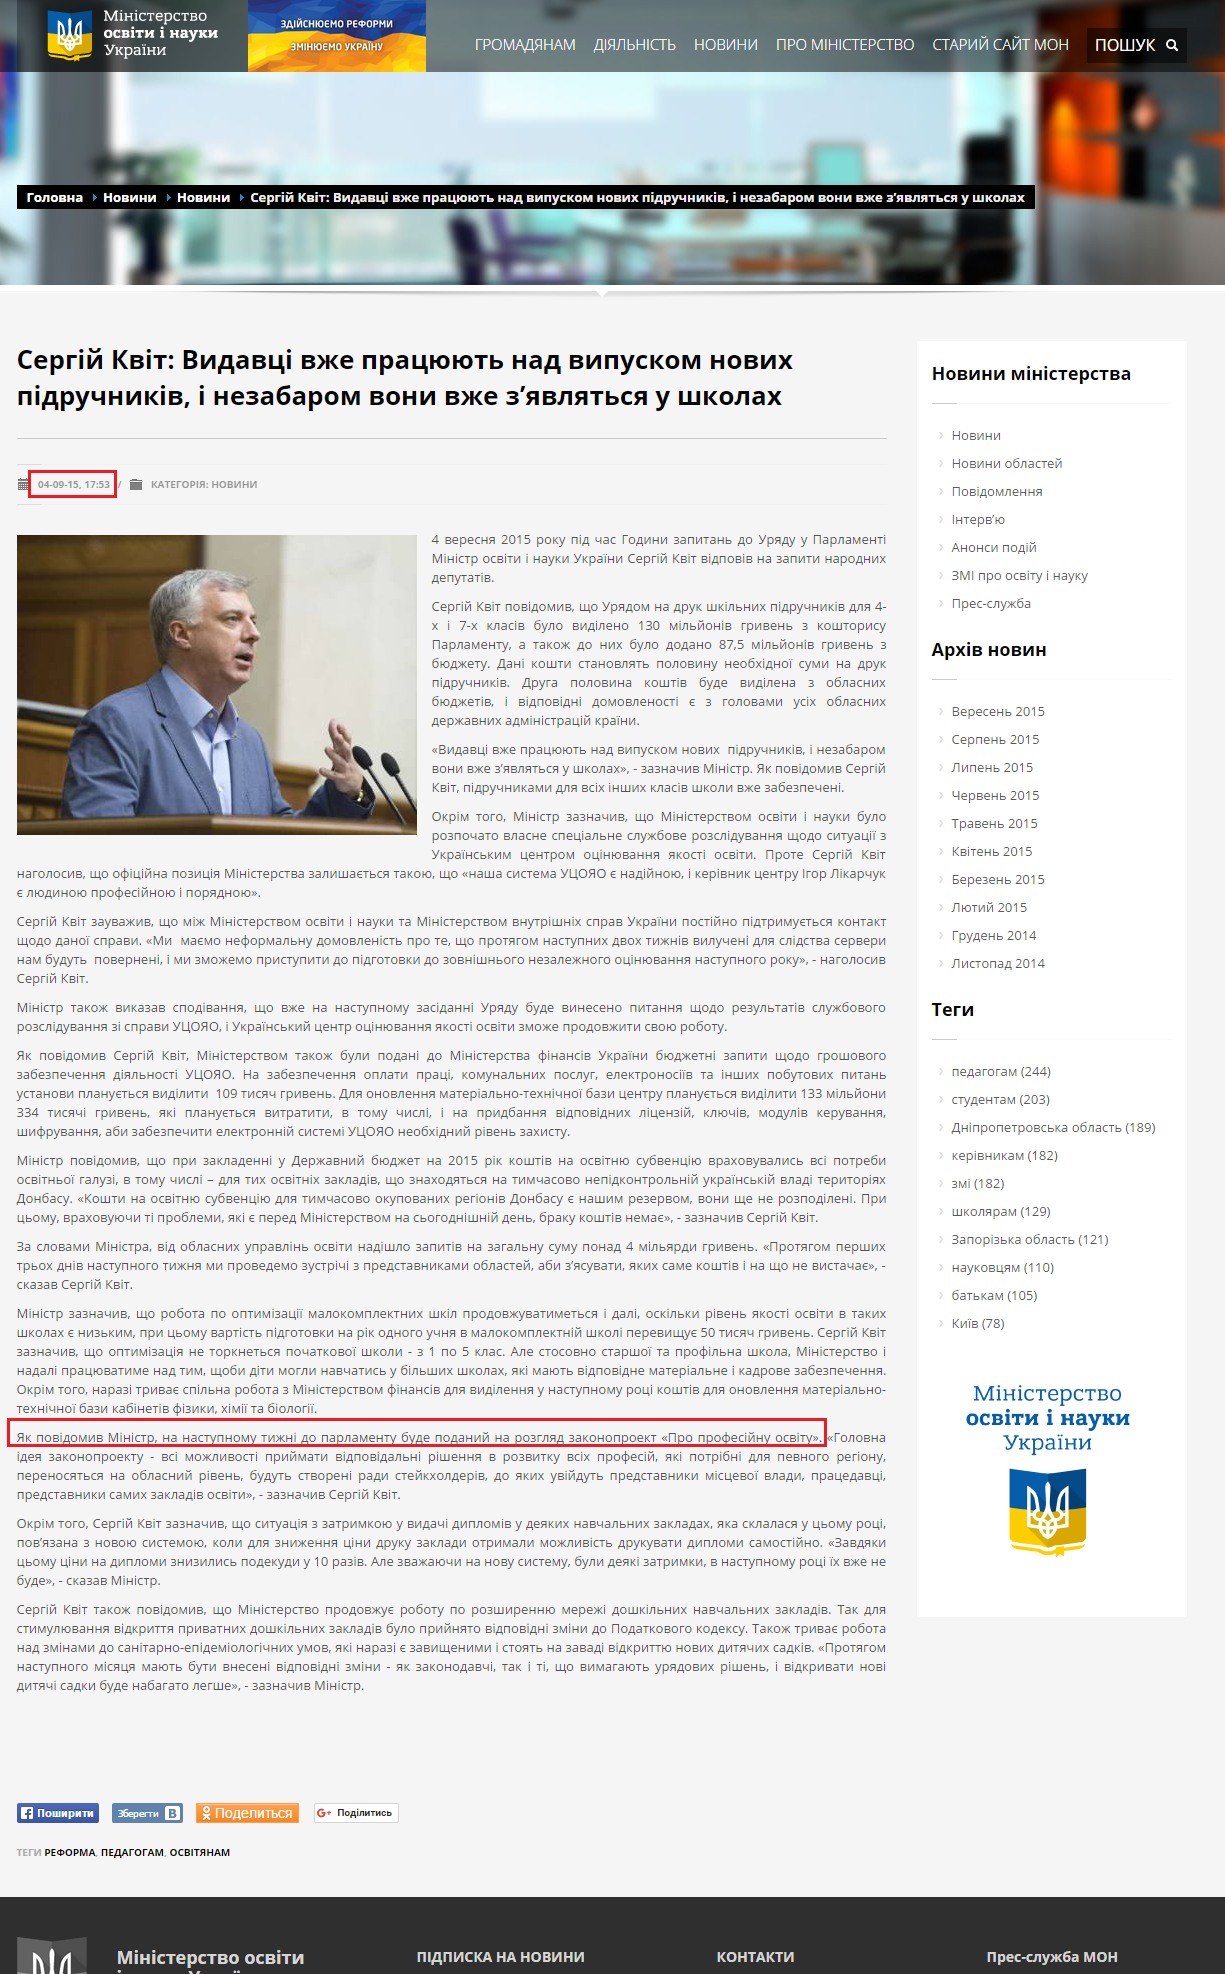 http://mon.gov.ua/usi-novivni/novini/2015/09/04/kvit/